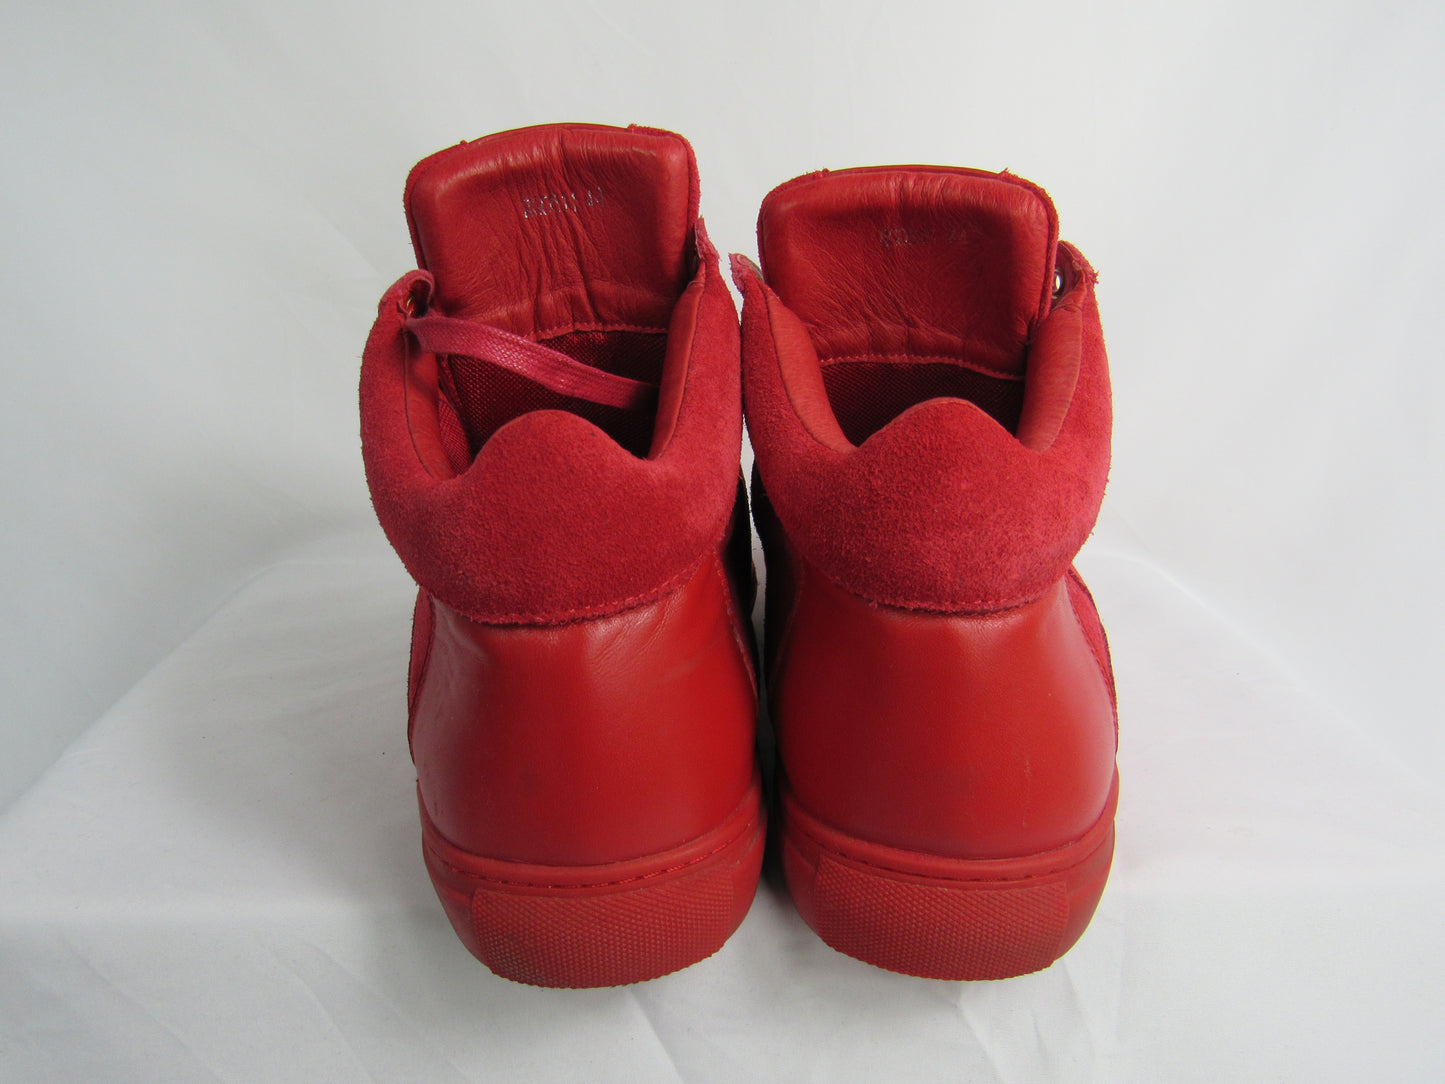 J BERNARD Sneakers - Size 44